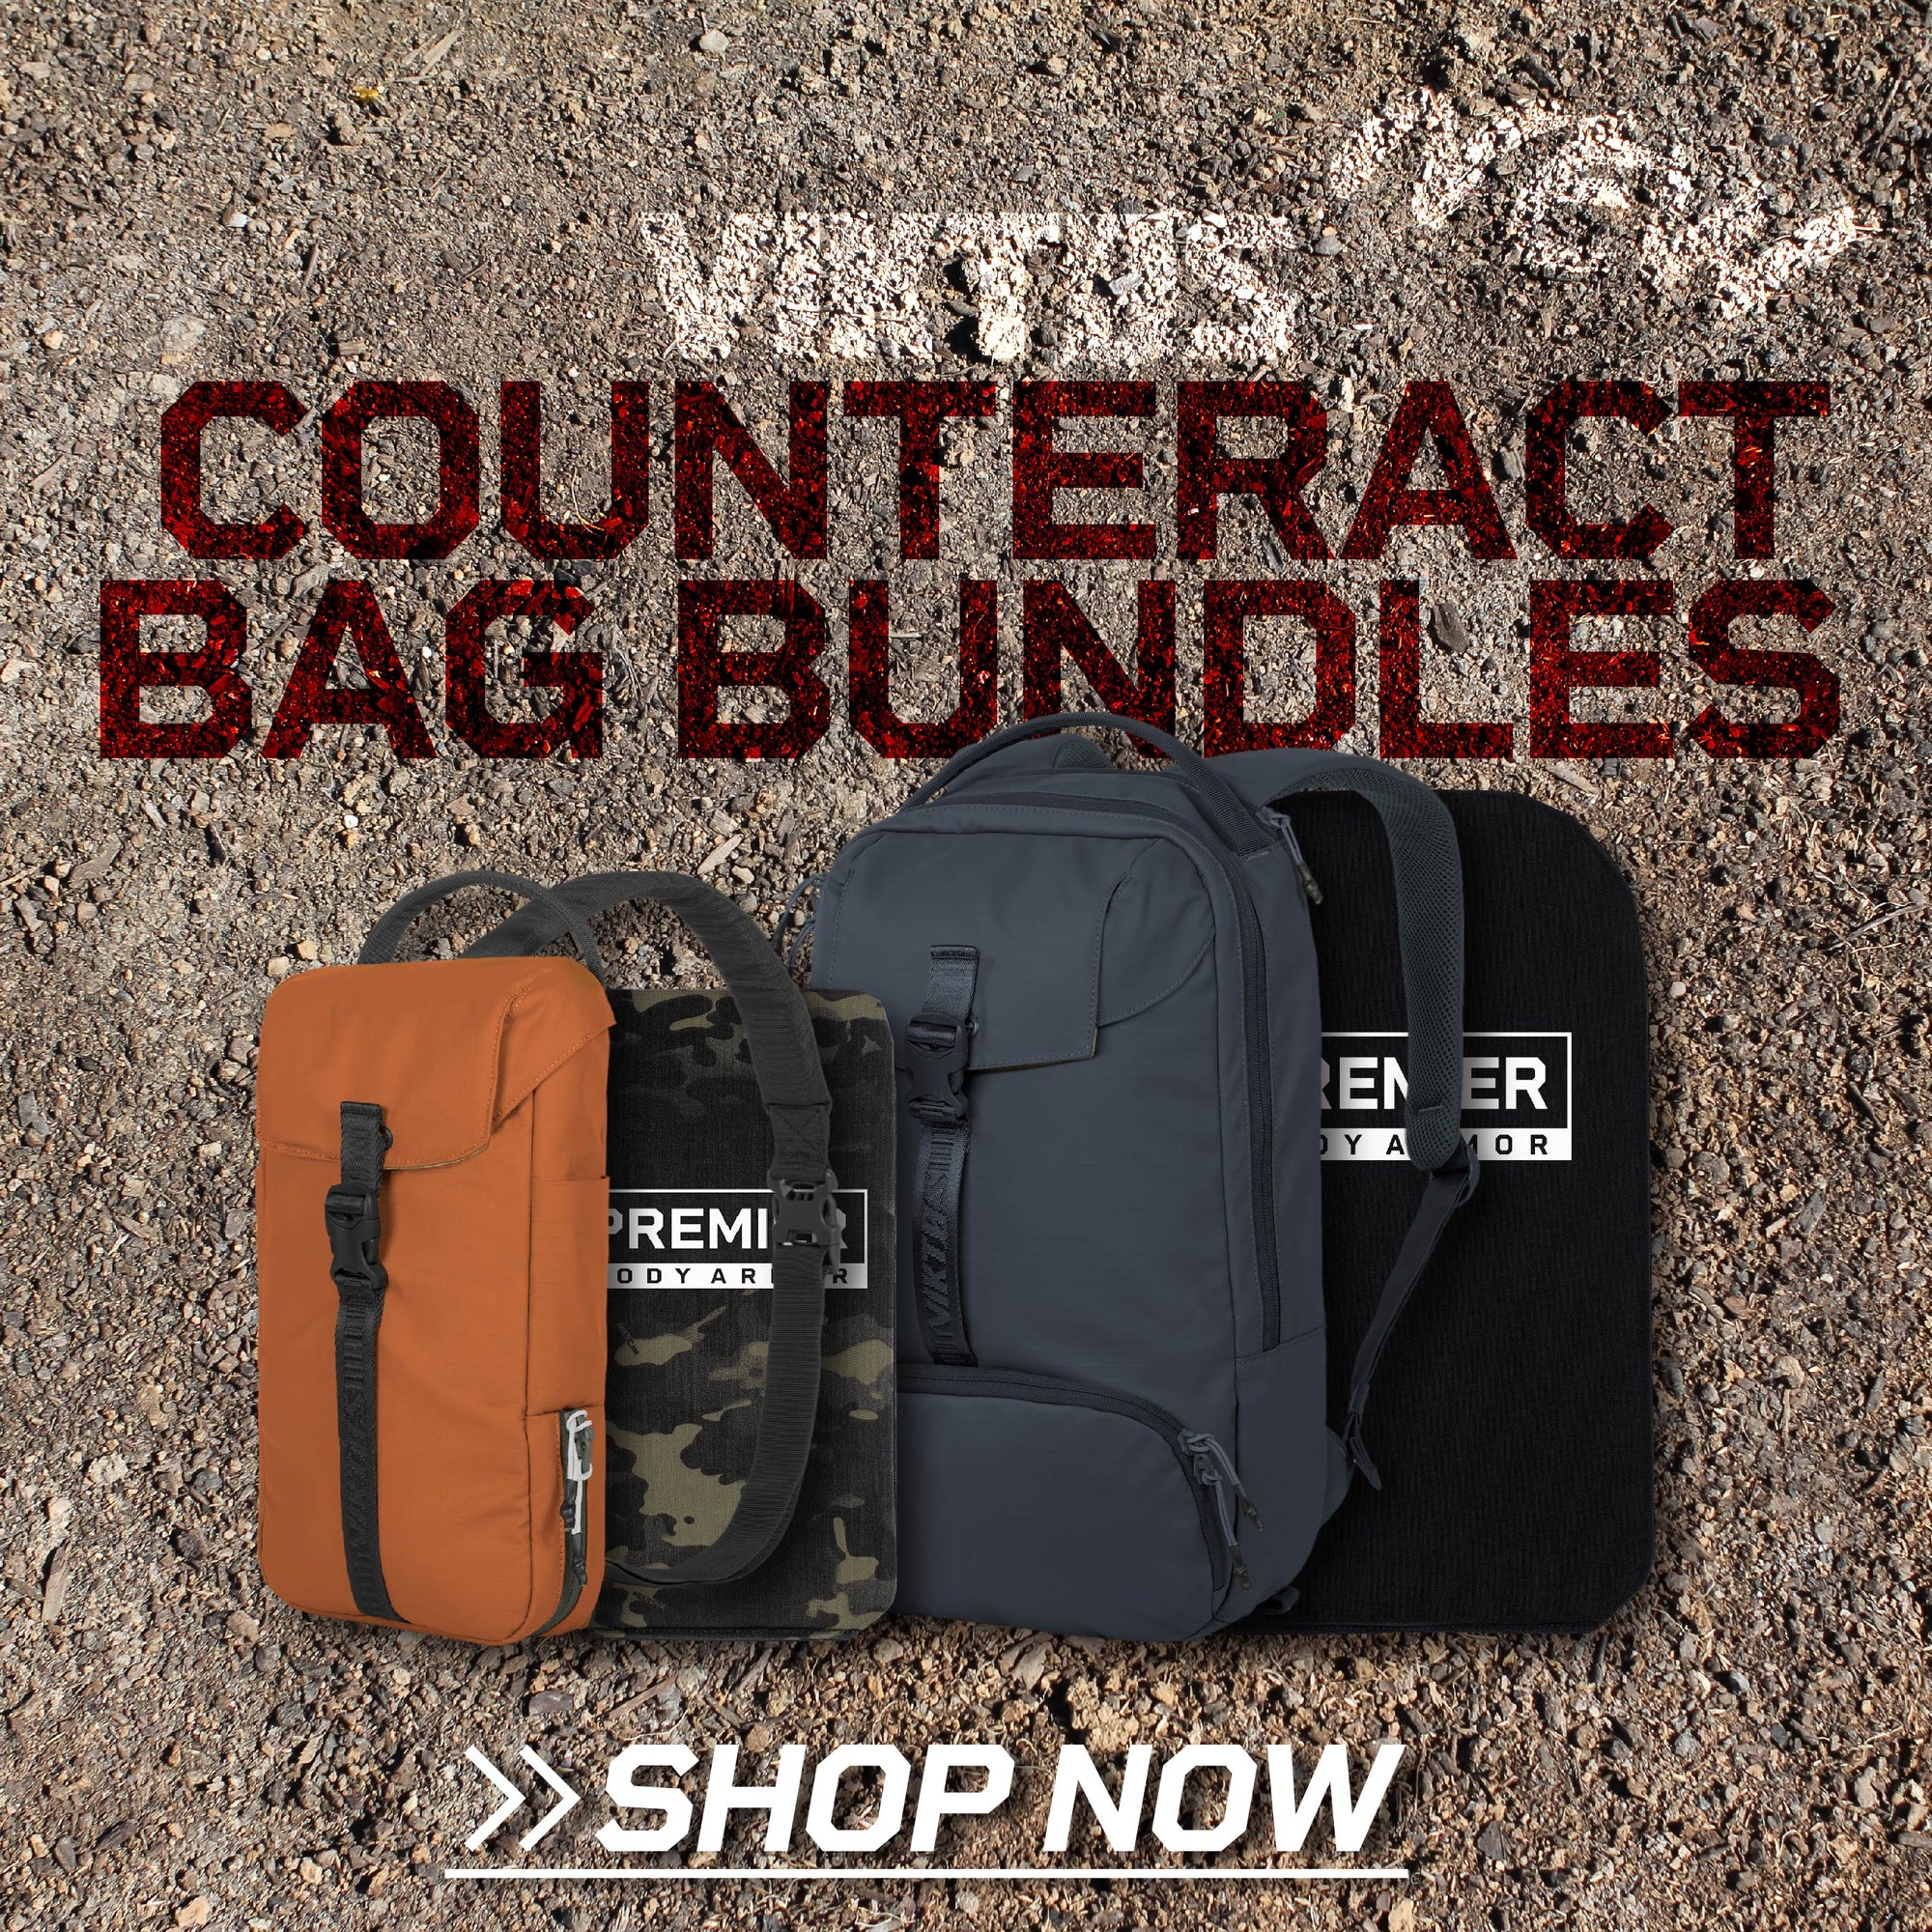 viktos counteract armored ccw bag bundles